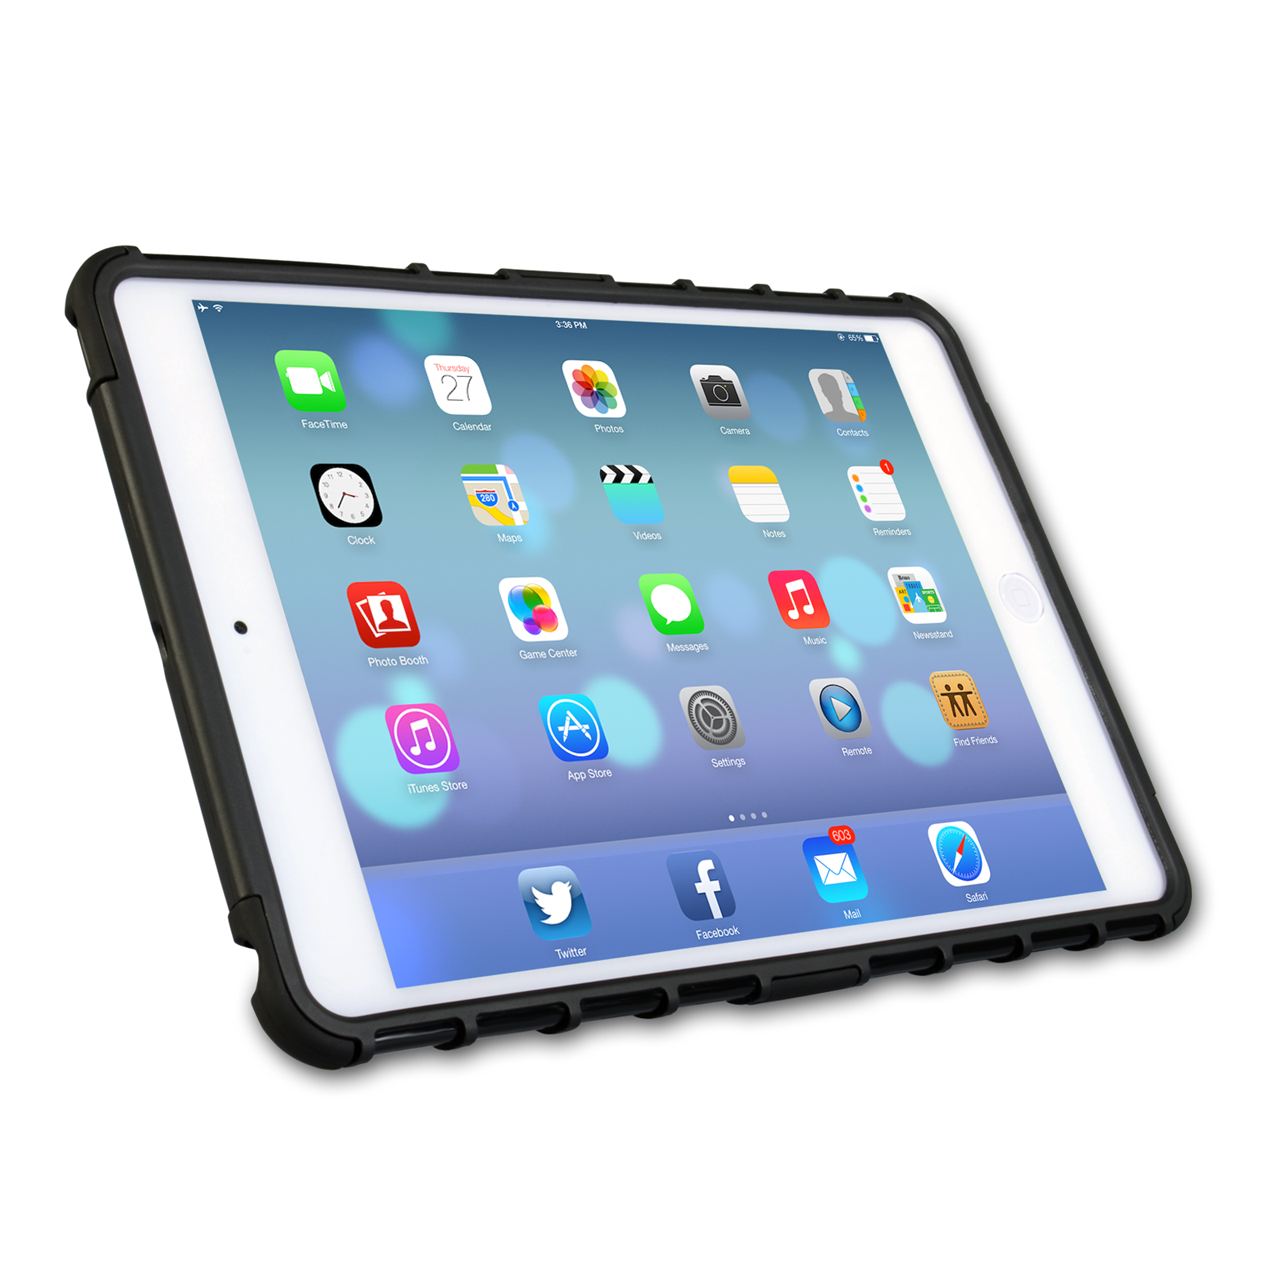 Caseflex iPad Mini 2 Tough Stand Cover - Black